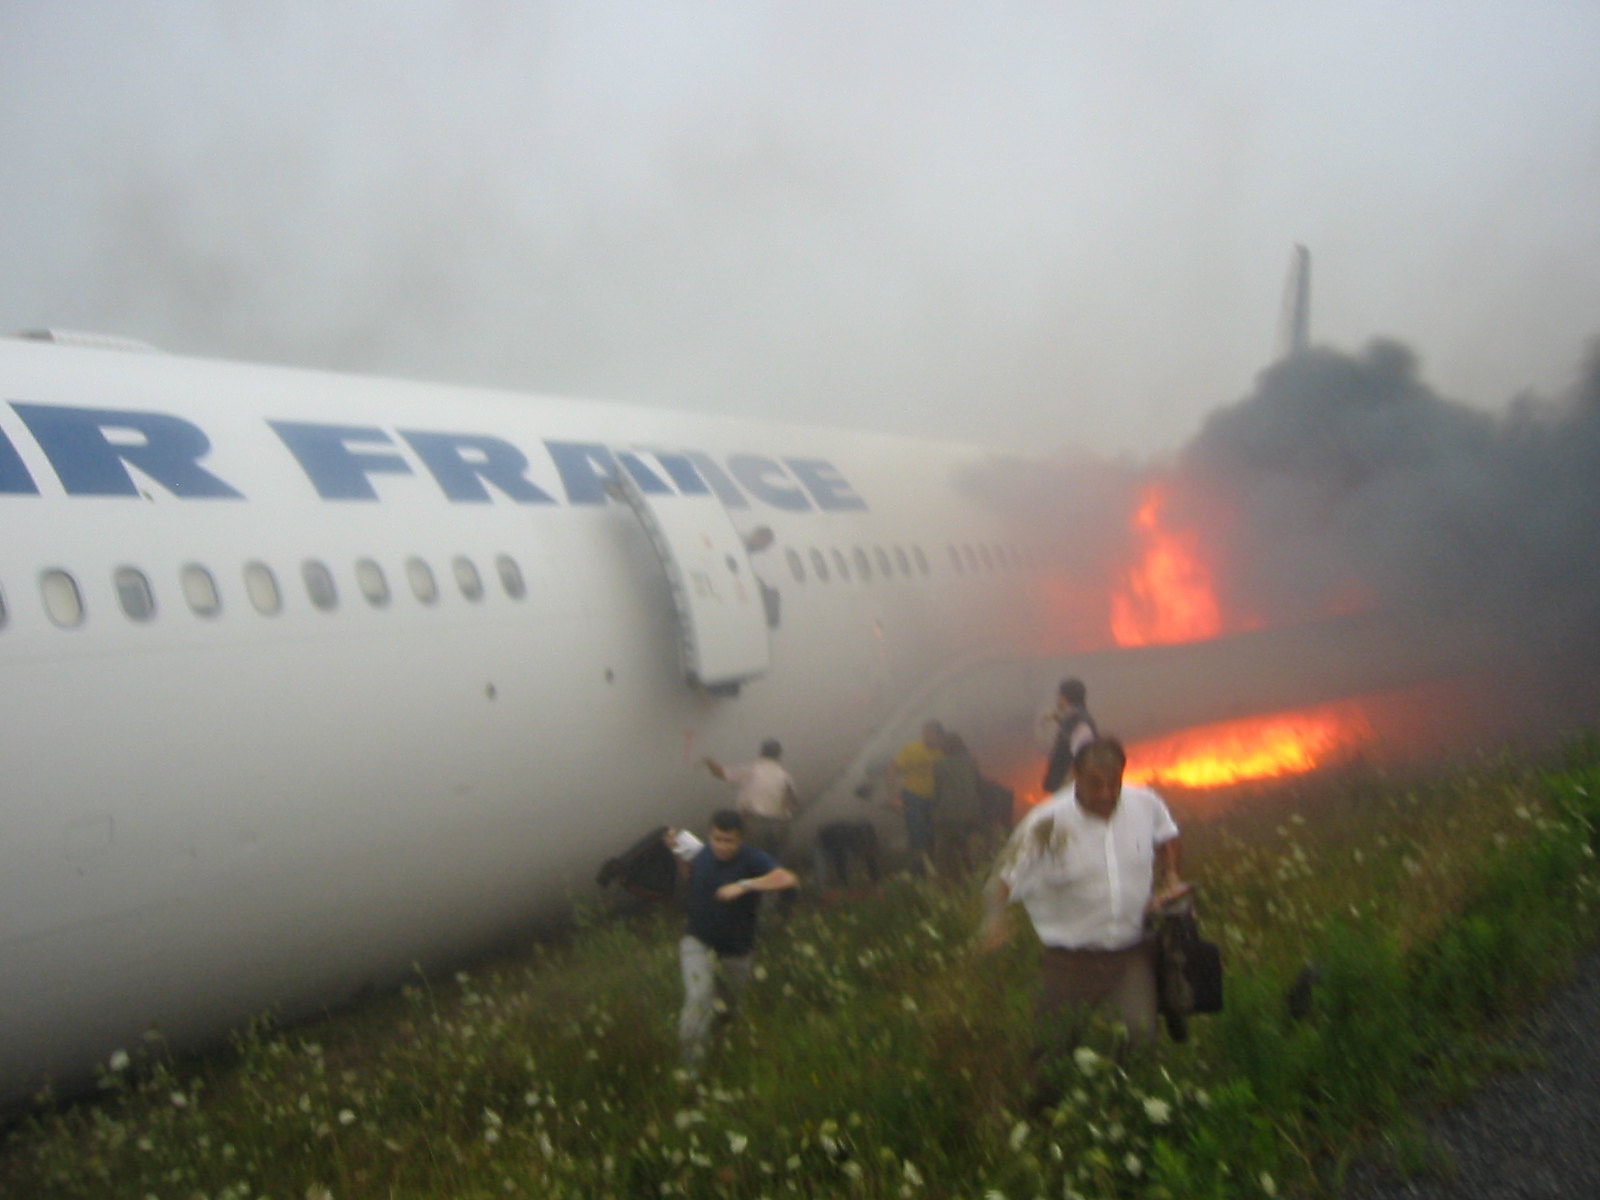 Air France 358